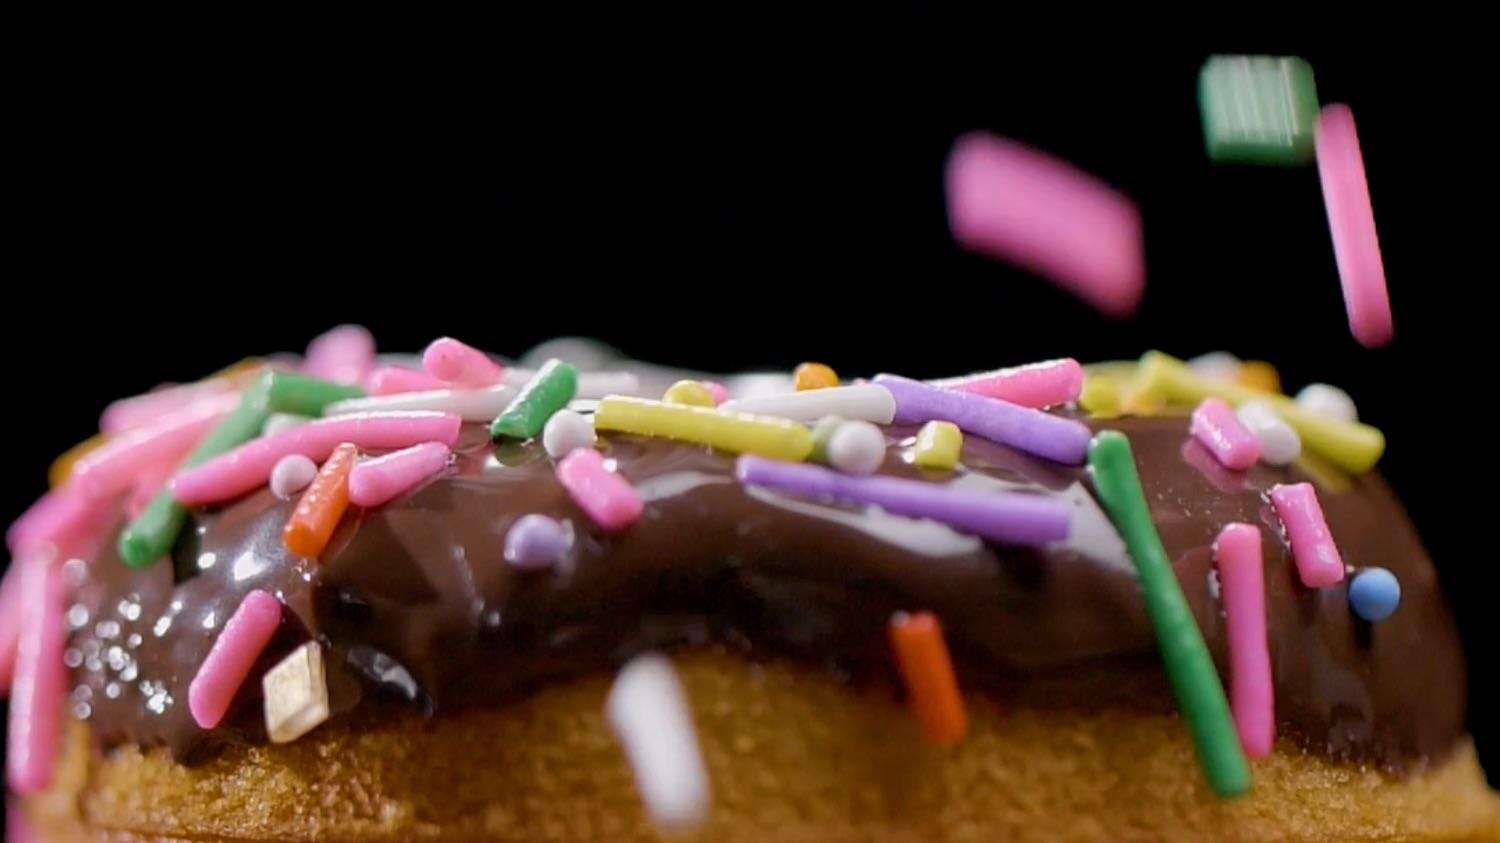 甜甜圈模具制作教程电商广告视频